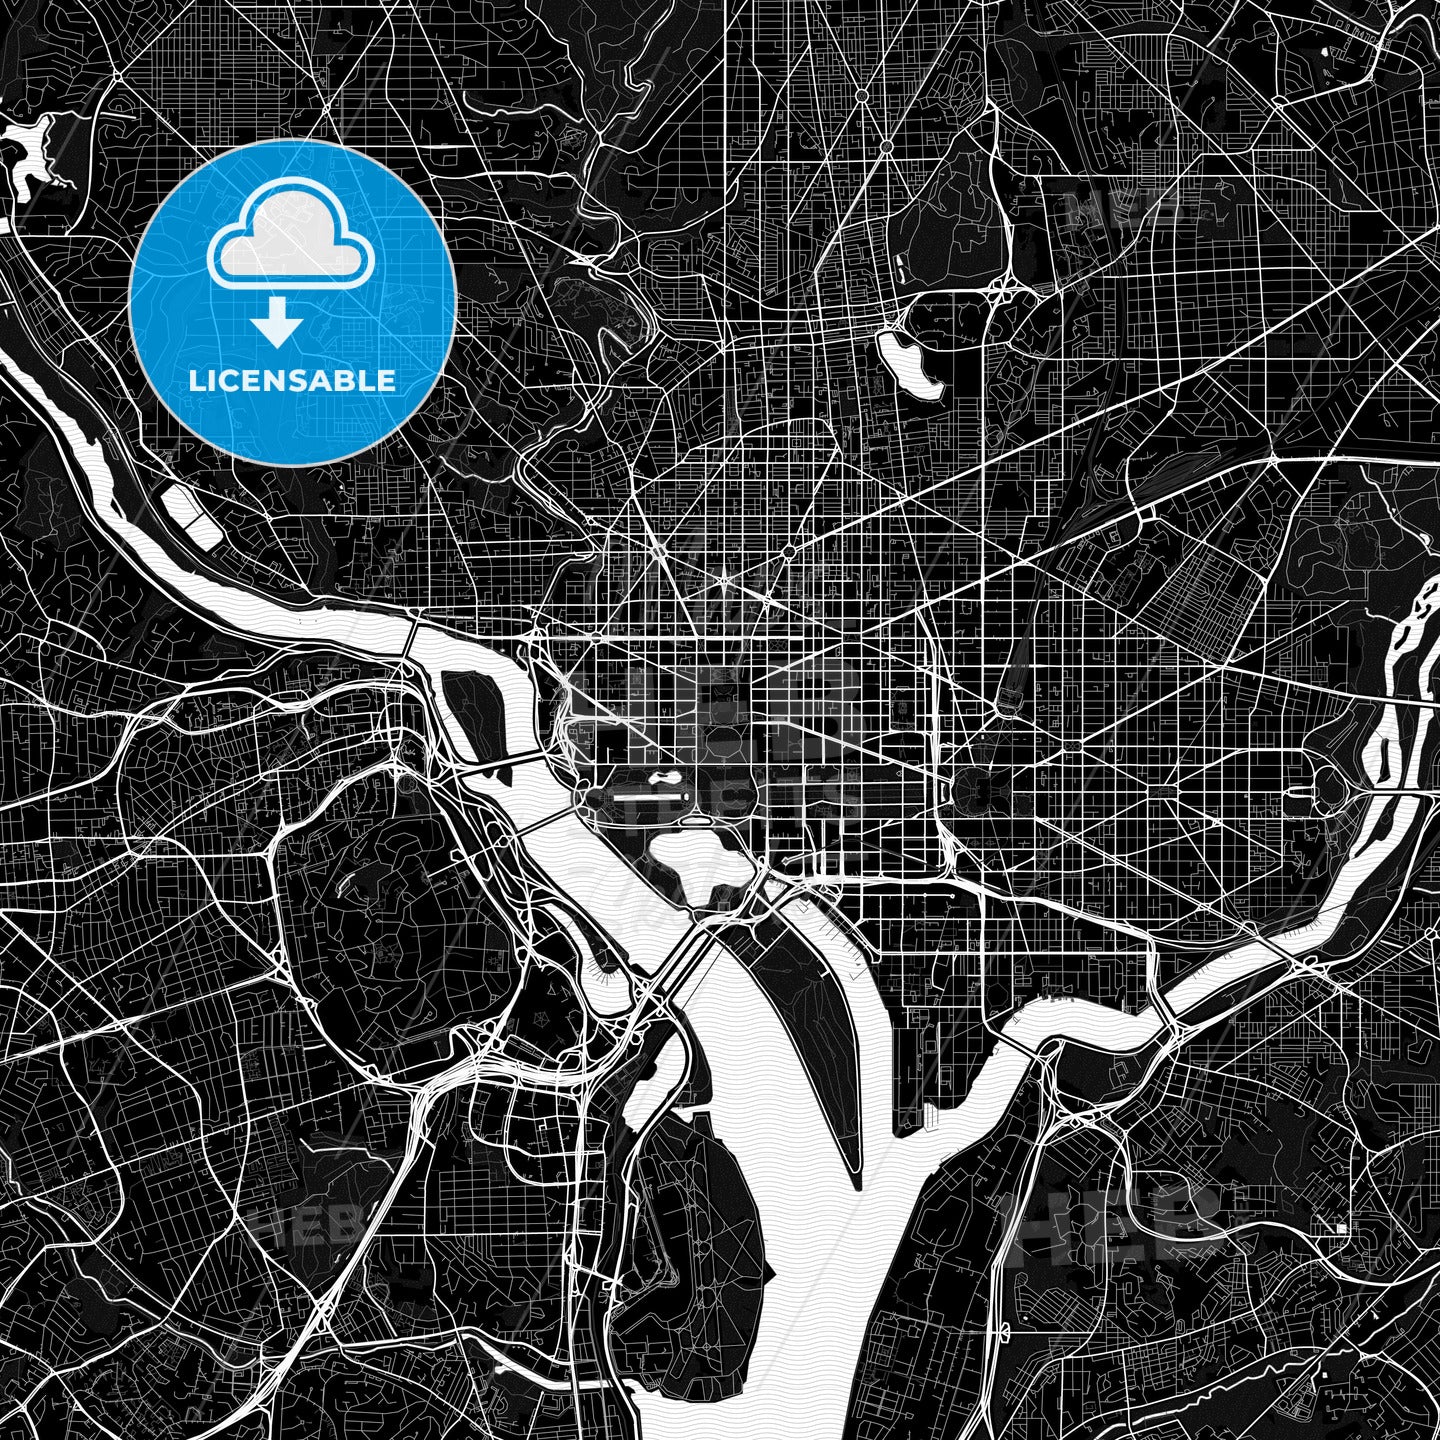 Washington, D.C., United States, PDF map